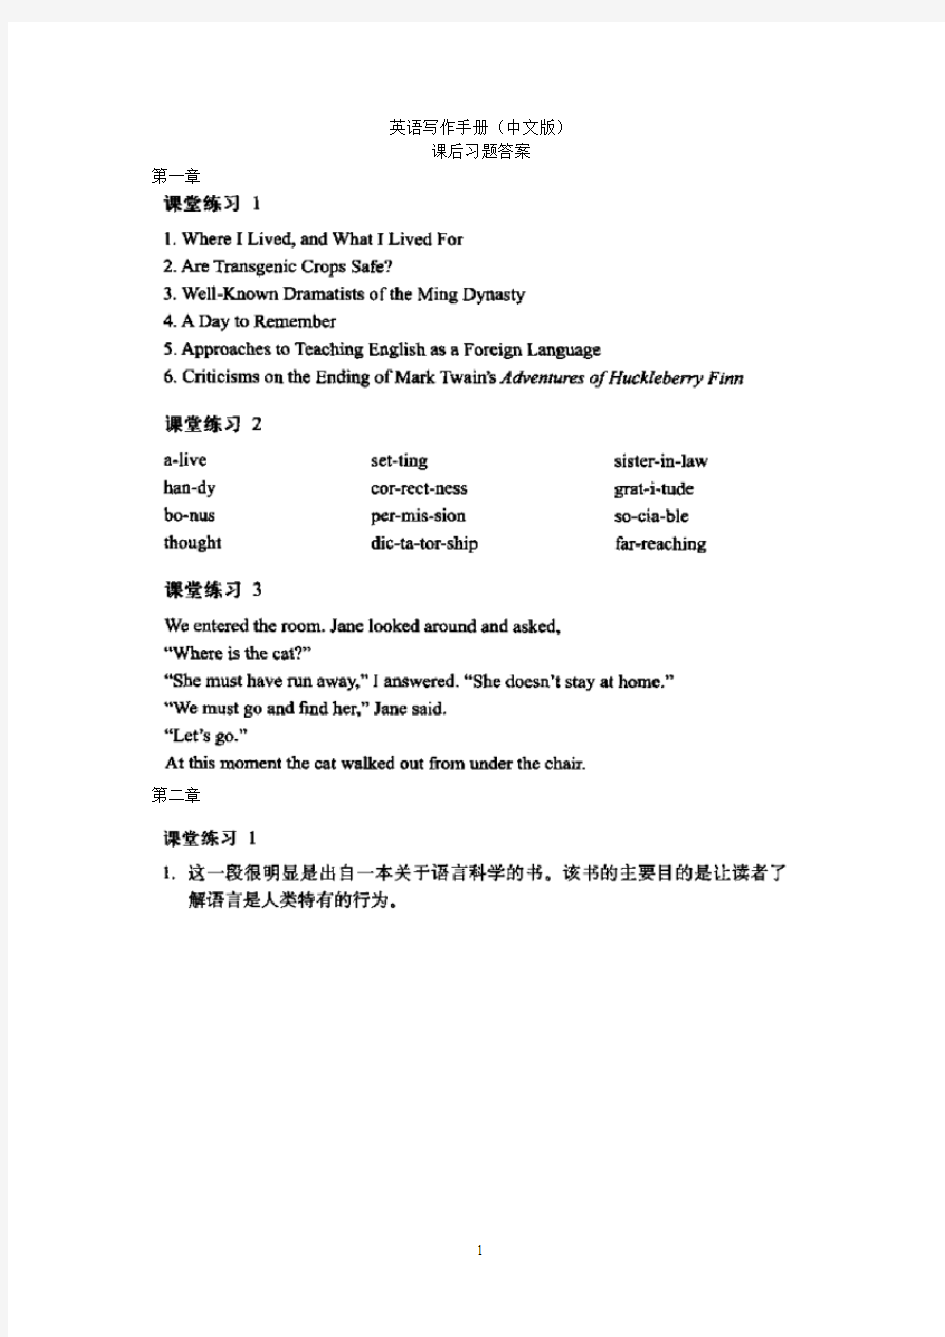 《英语写作手册》(中文版)课后习题答案